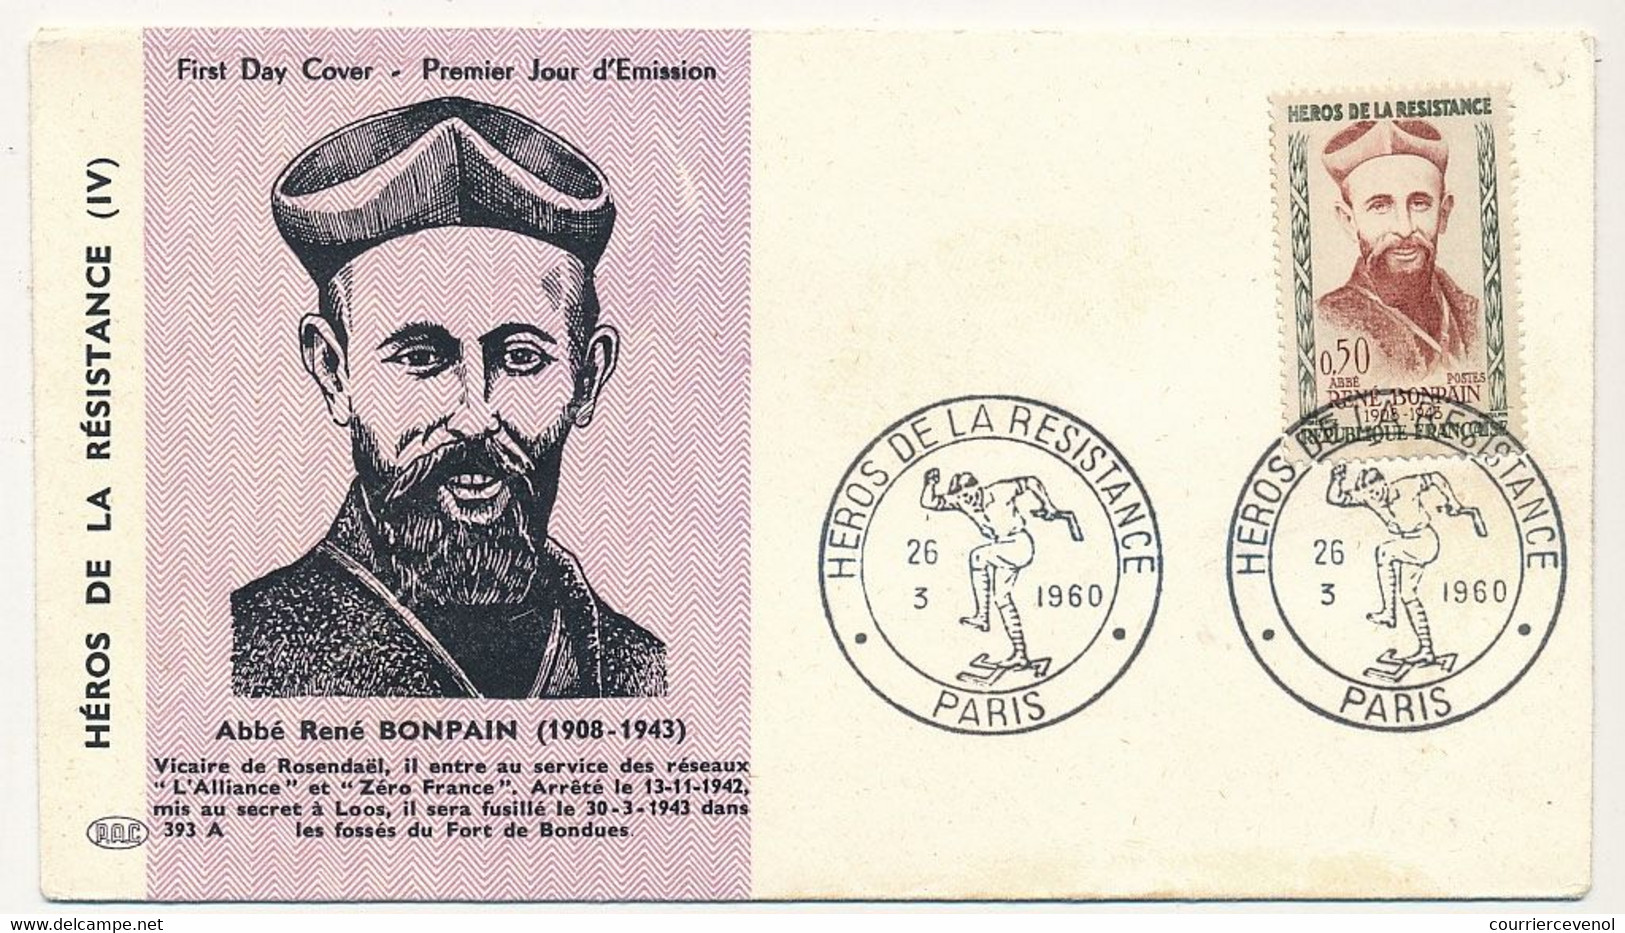 11 enveloppes FDC "Héros de la Résistance" 1960 - Masse, Ripoche, Debeaumarché, Vieljeux, Bompain - dont cachets second.